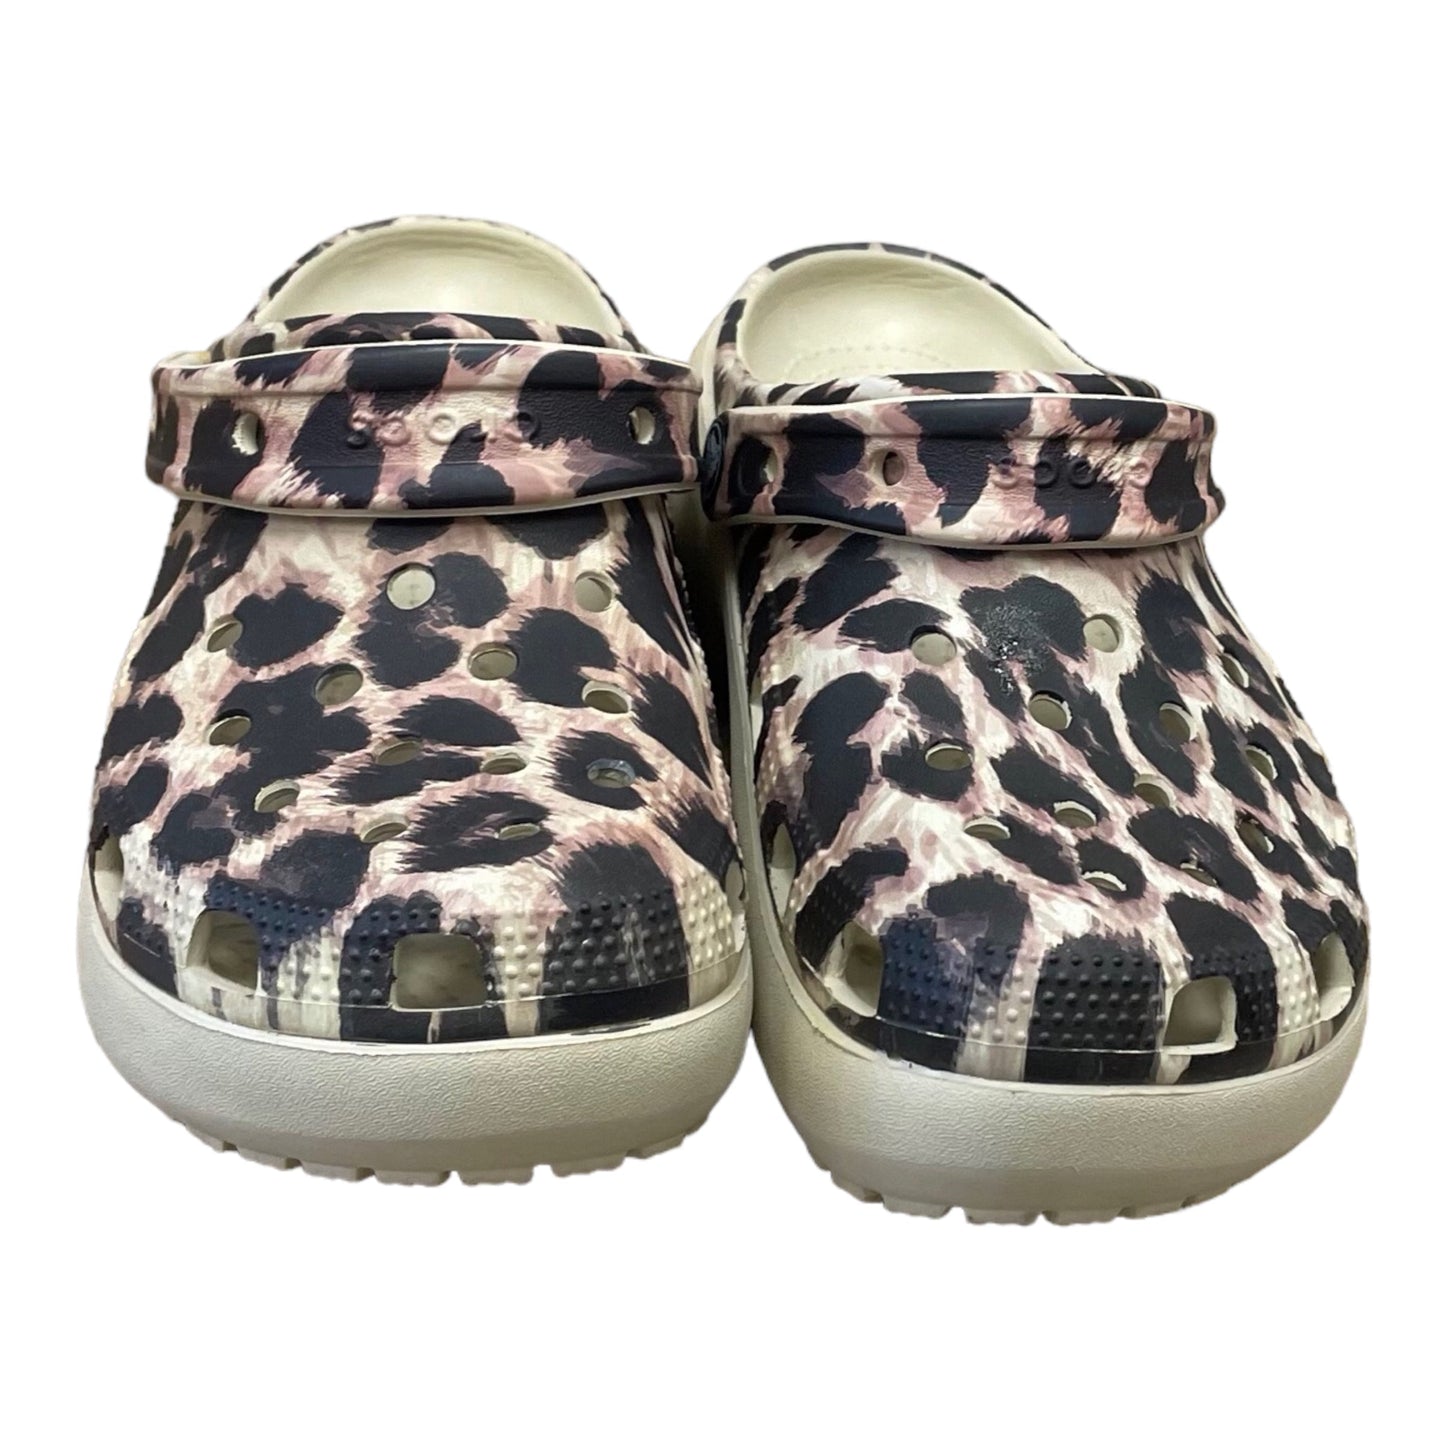 Sandals Flats By Crocs  Size: 5